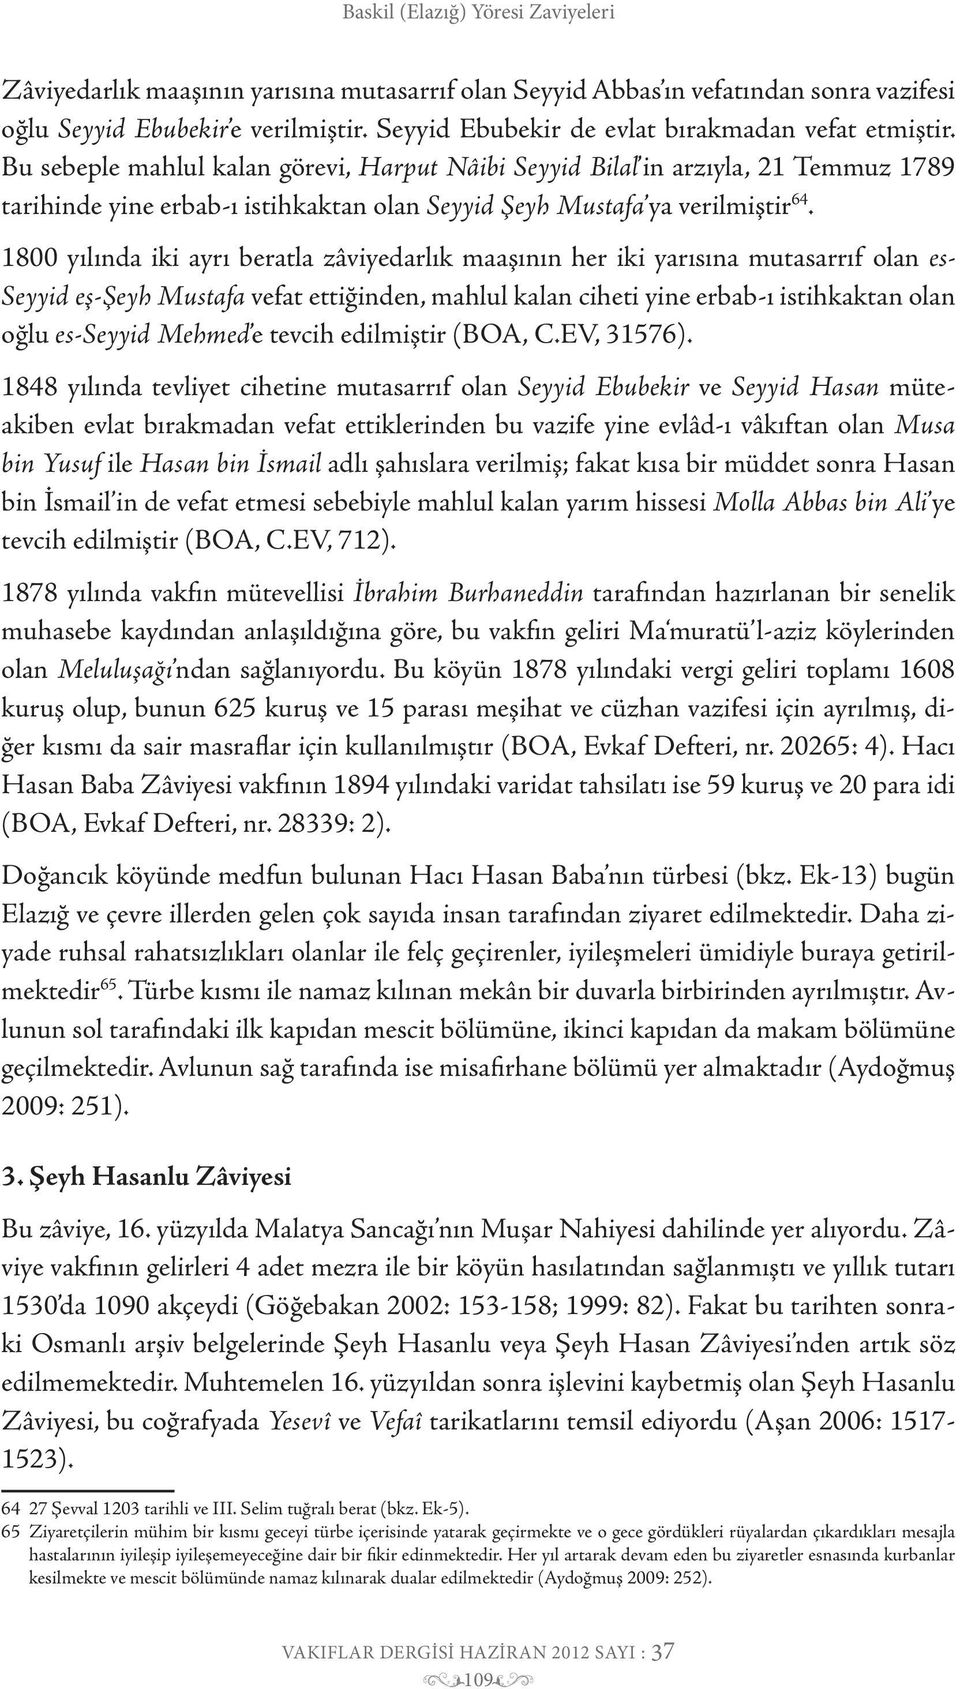 1800 yılında iki ayrı beratla zâviyedarlık maaşının her iki yarısına mutasarrıf olan es- Seyyid eş-şeyh Mustafa vefat ettiğinden, mahlul kalan ciheti yine erbab-ı istihkaktan olan oğlu es-seyyid